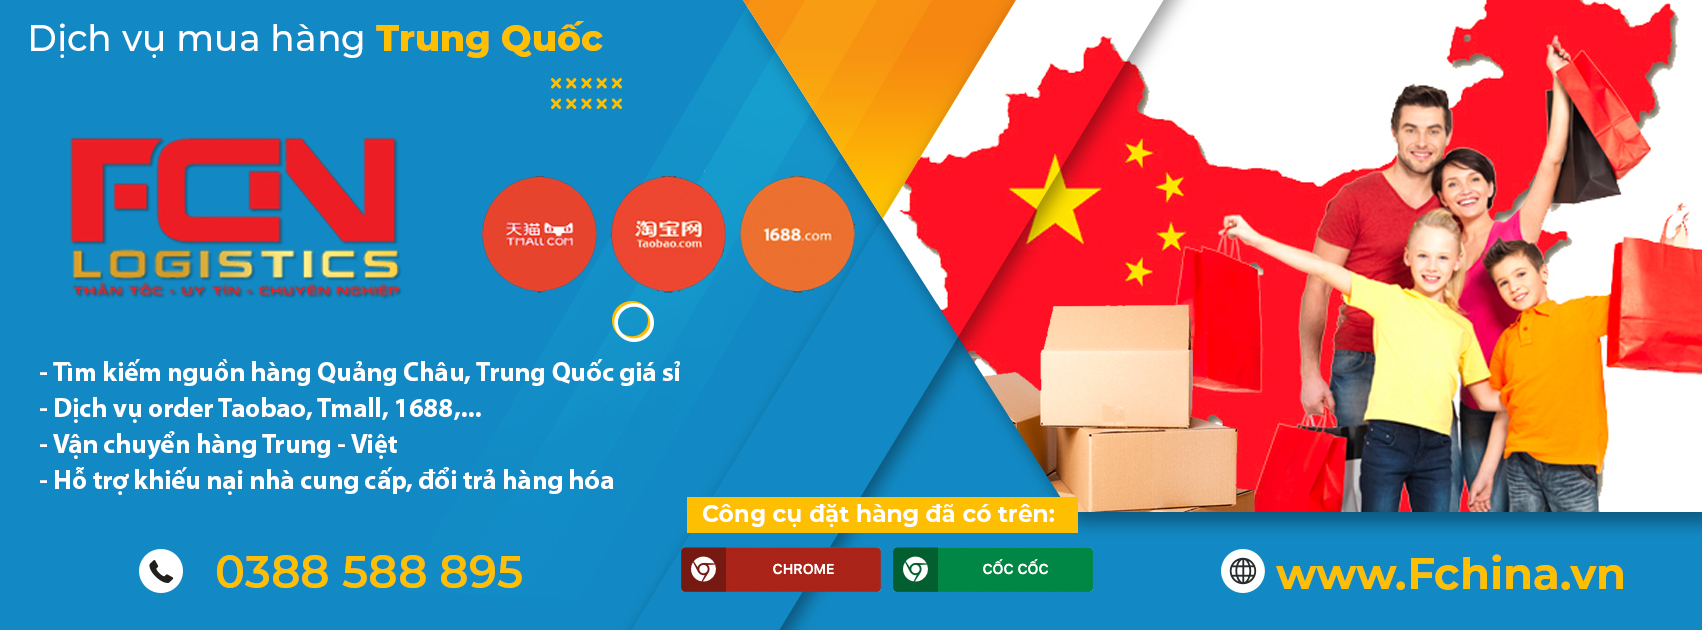 Công ty Fchina - Dịch vụ order hàng Trung Quốc giá rẻ